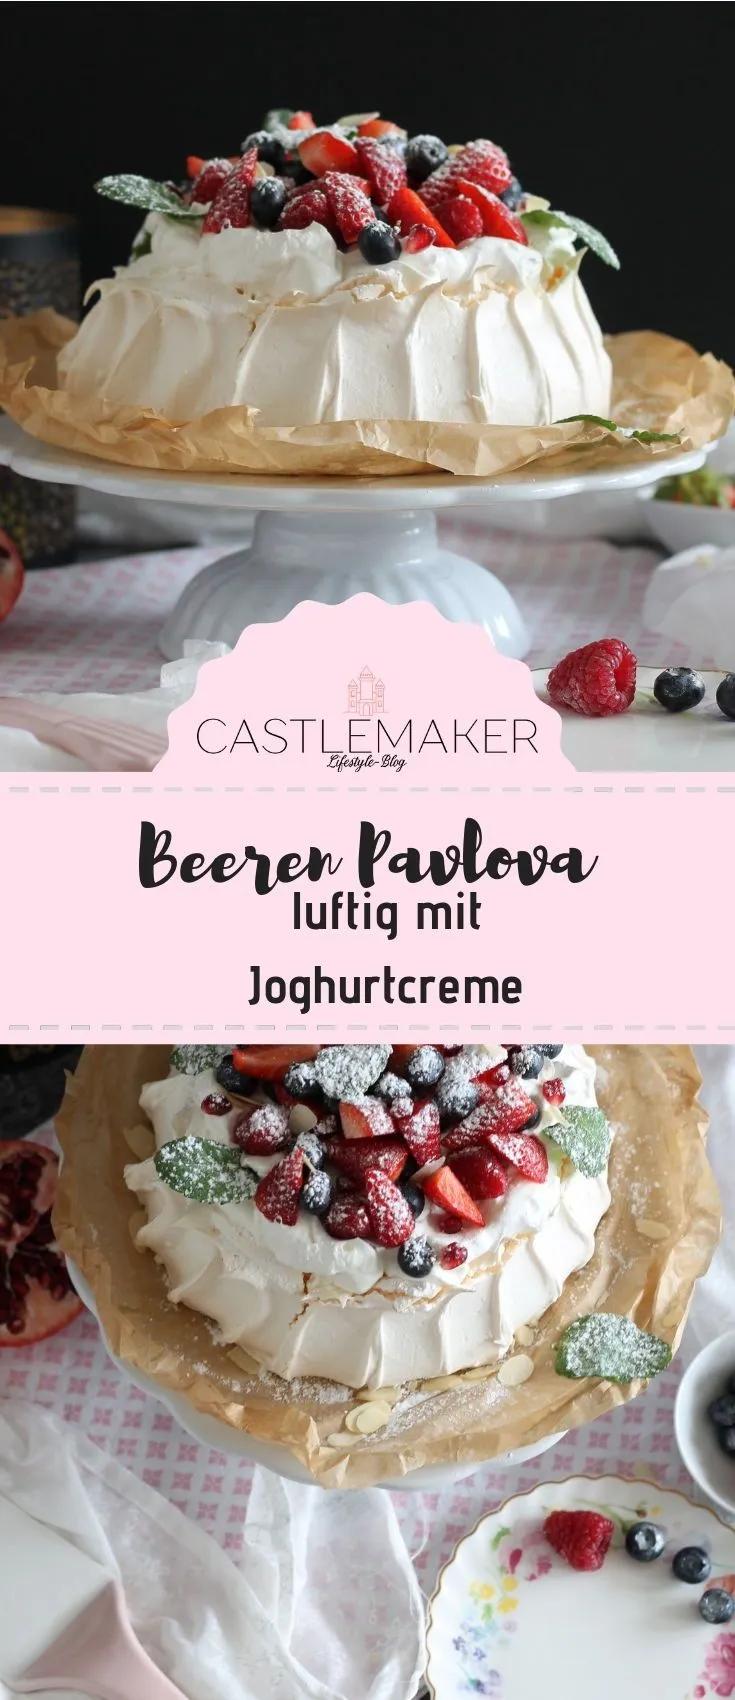 Beeren Pavlova - so geht das luftig leichte Dessert « Castlemaker Food ...